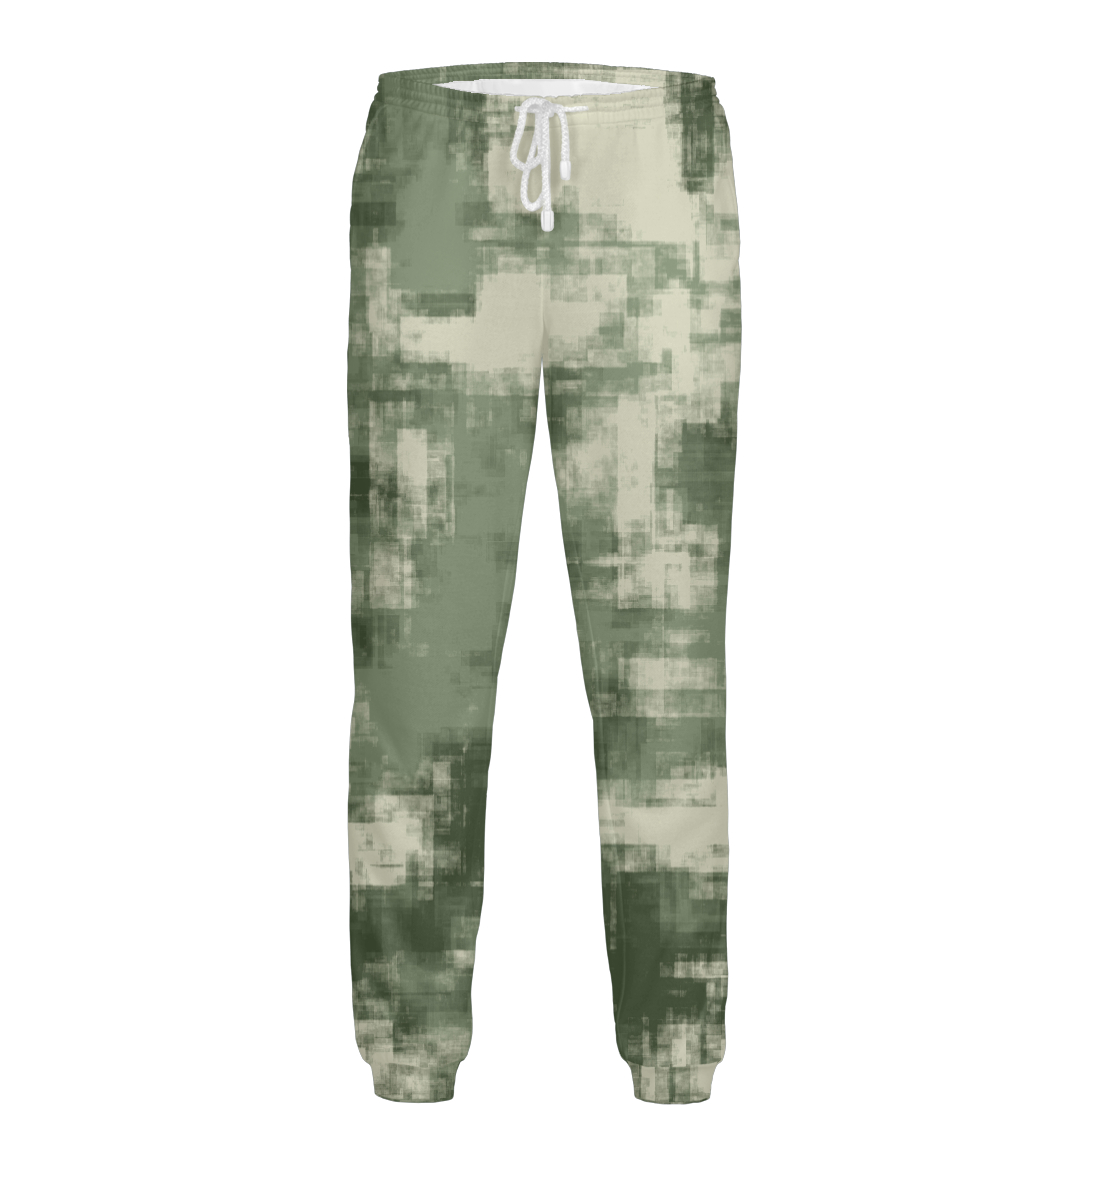 Мужские Штаны Военный камуфляж- одежда для мужчин и женщин, артикул CMF-442561-pnt-2mp